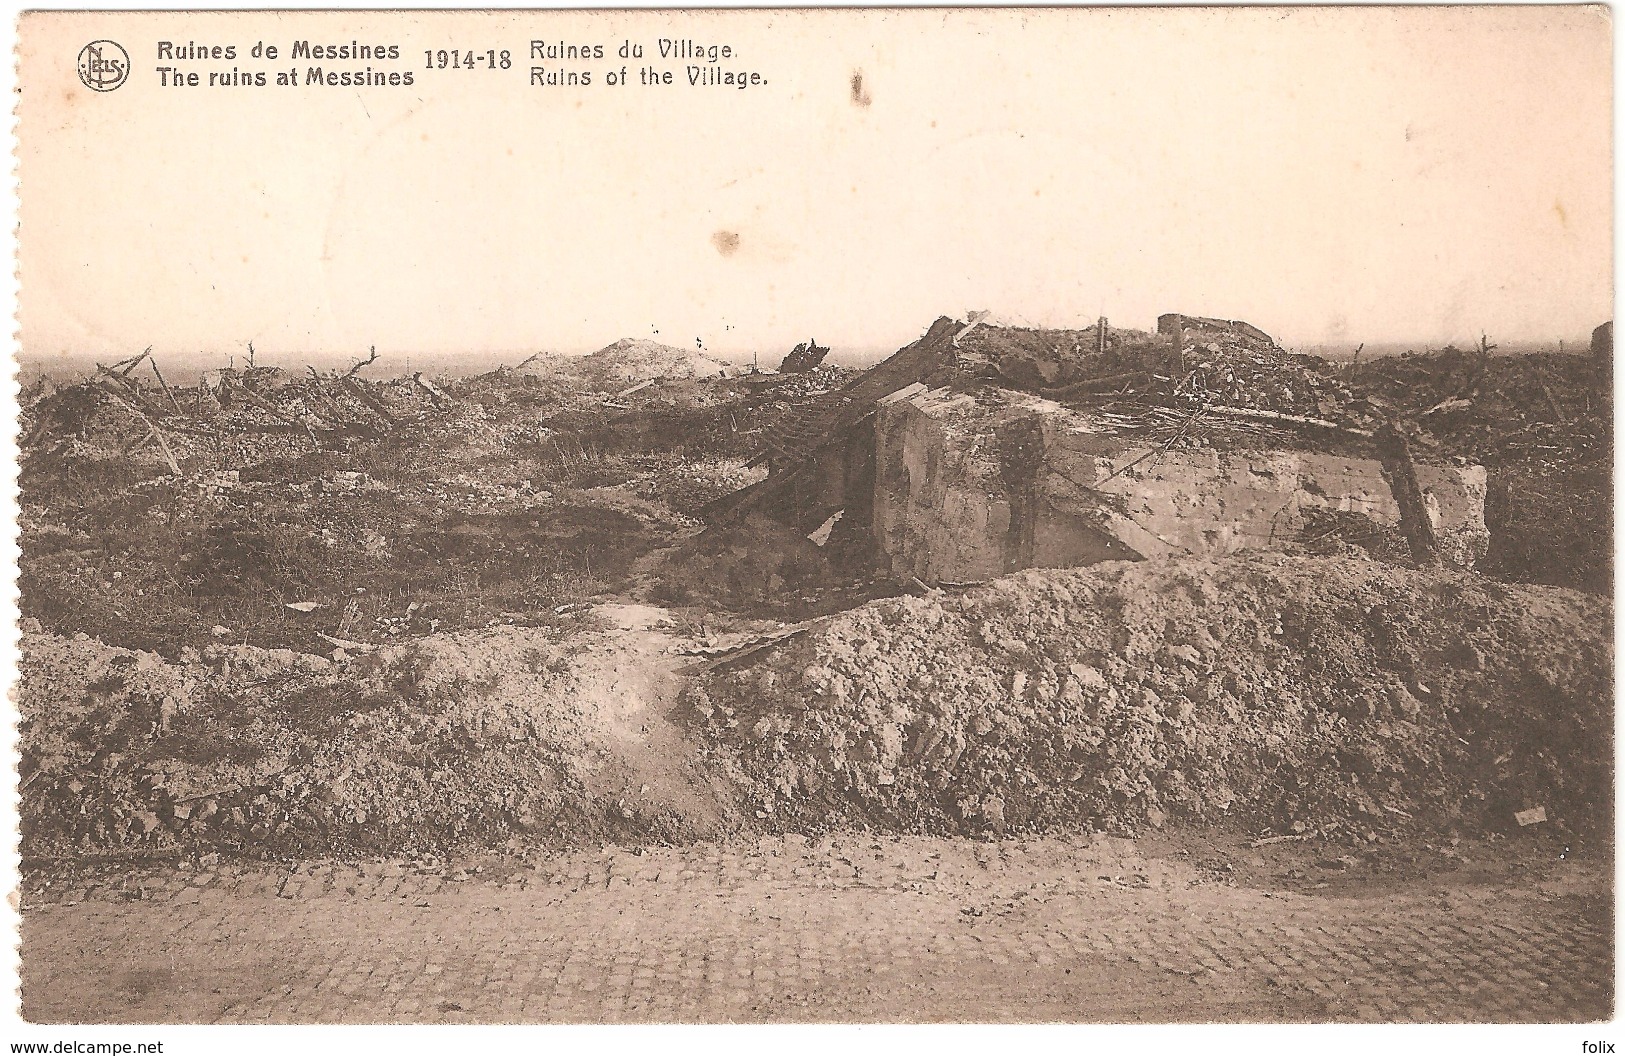 Mesen - Ruins / Ruines De Messines - 1914-18 - Ruines Du Village - Ruins Of The Village - Verstuurd 1919 - Messines - Mesen